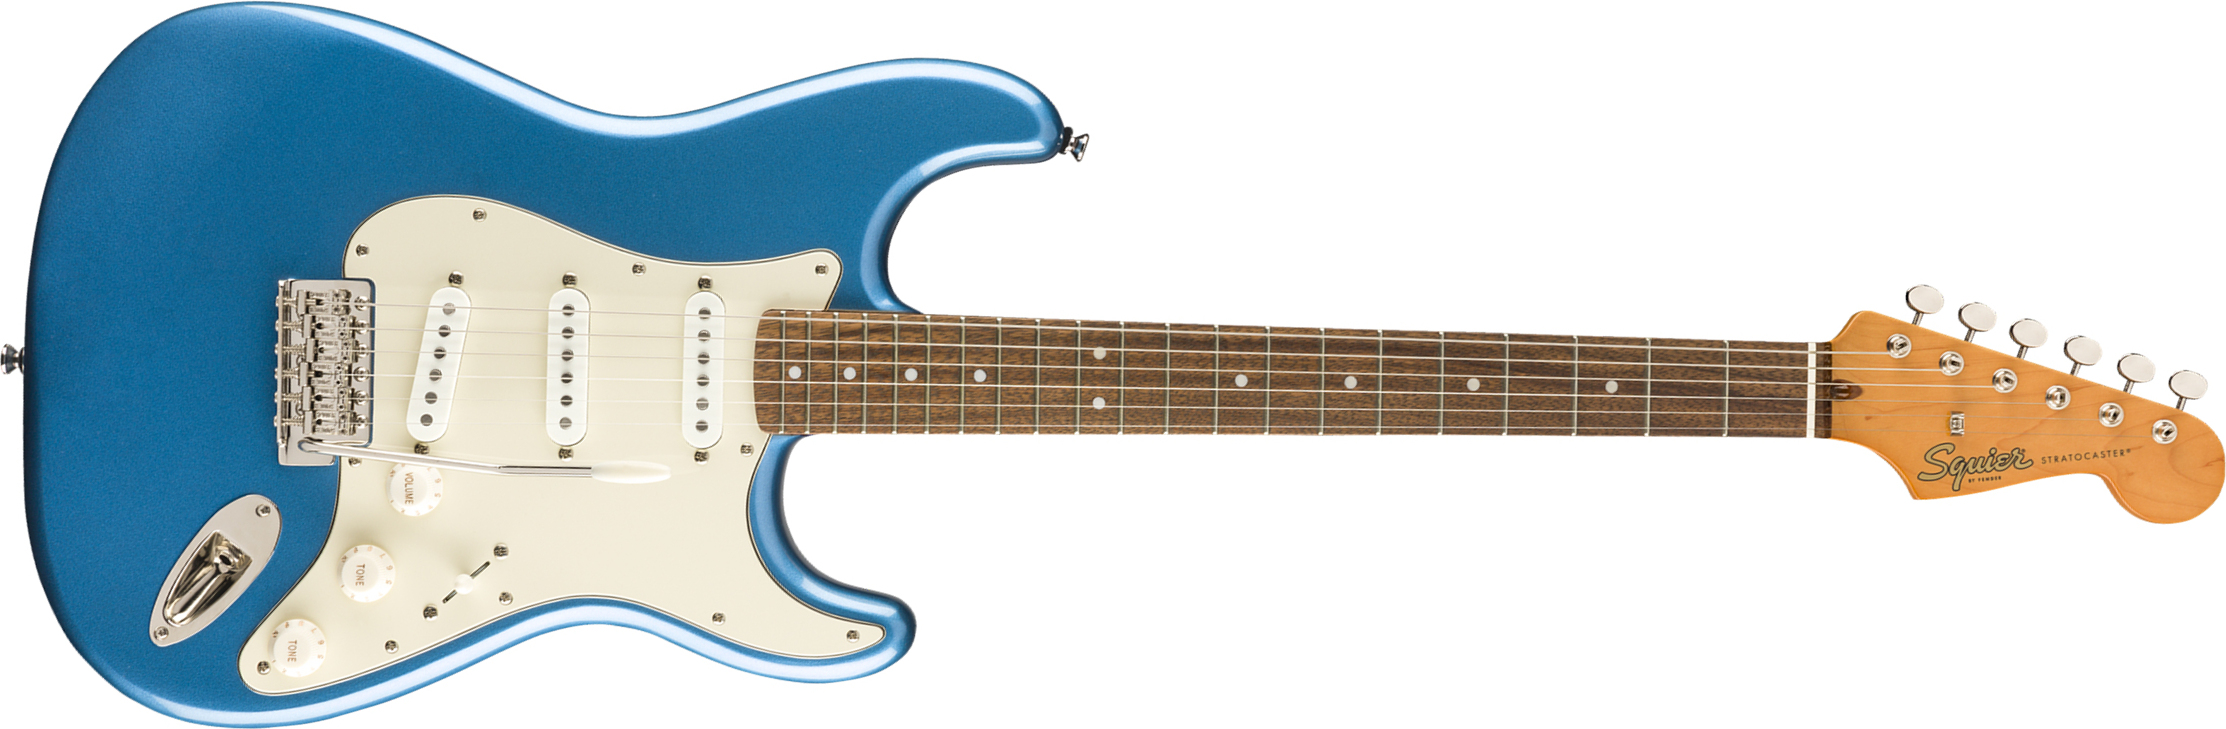 Squier Strat '60s Classic Vibe 2019 Lau 2019 - Lake Placid Blue - Guitarra eléctrica con forma de str. - Main picture